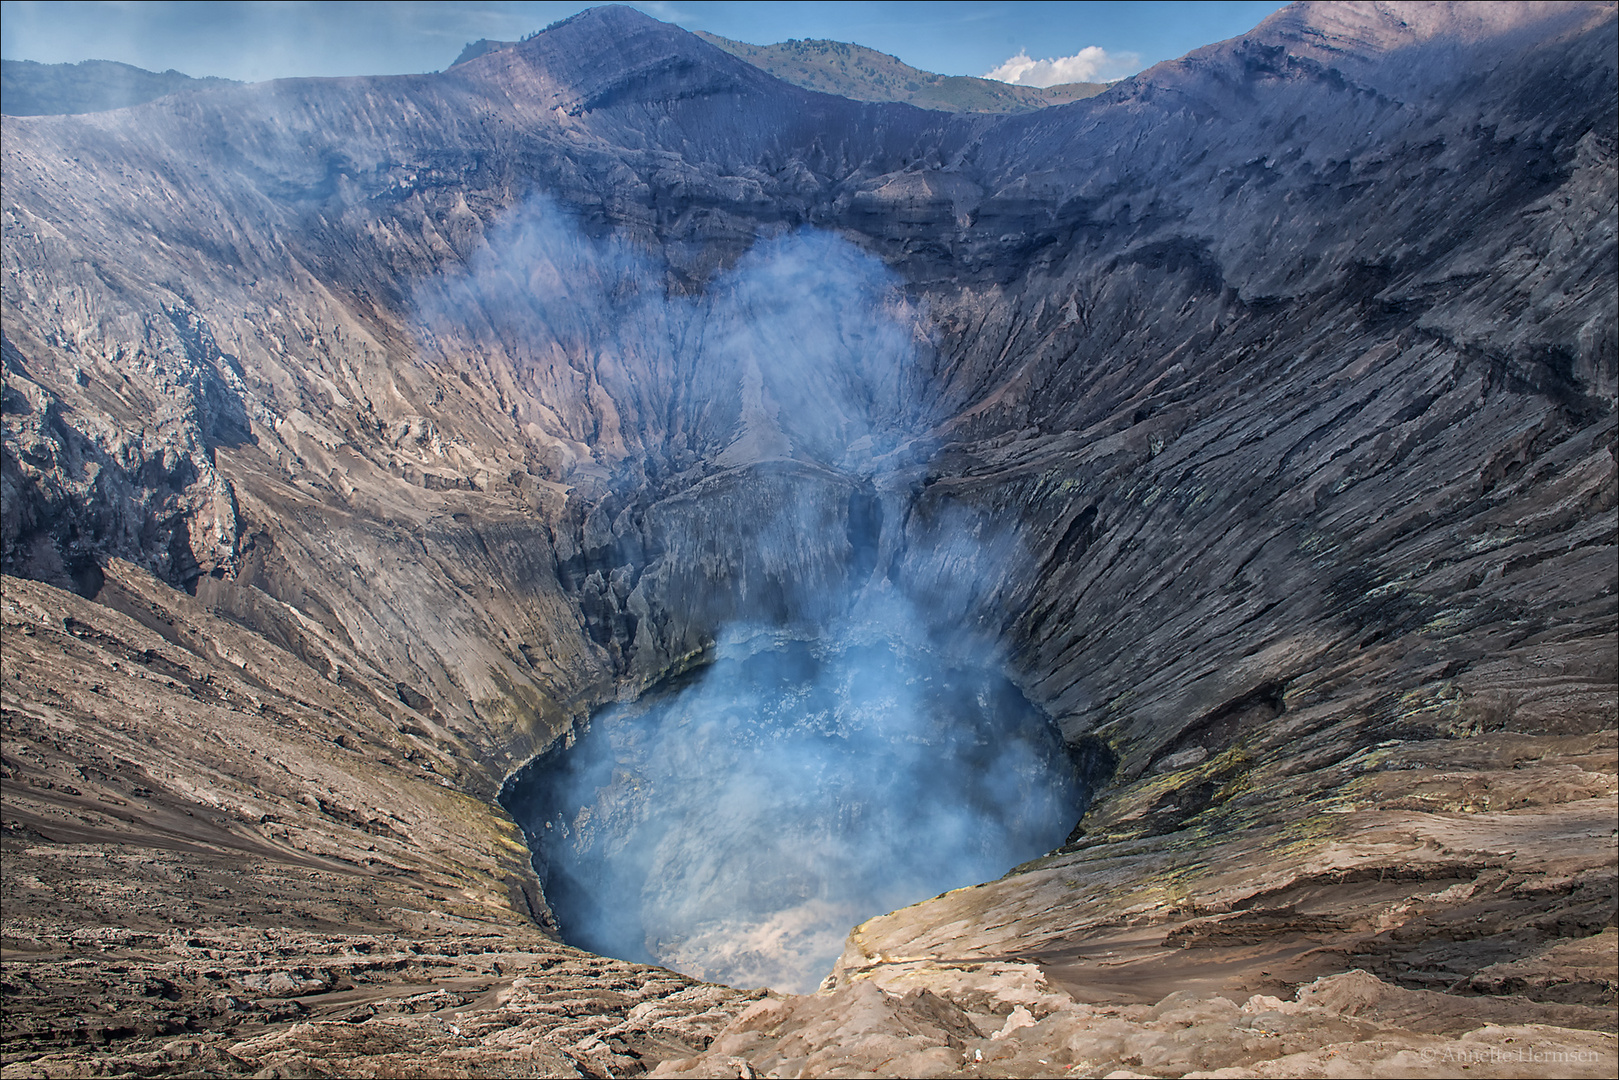 Indonesien [31] - Der Blick in den Krater